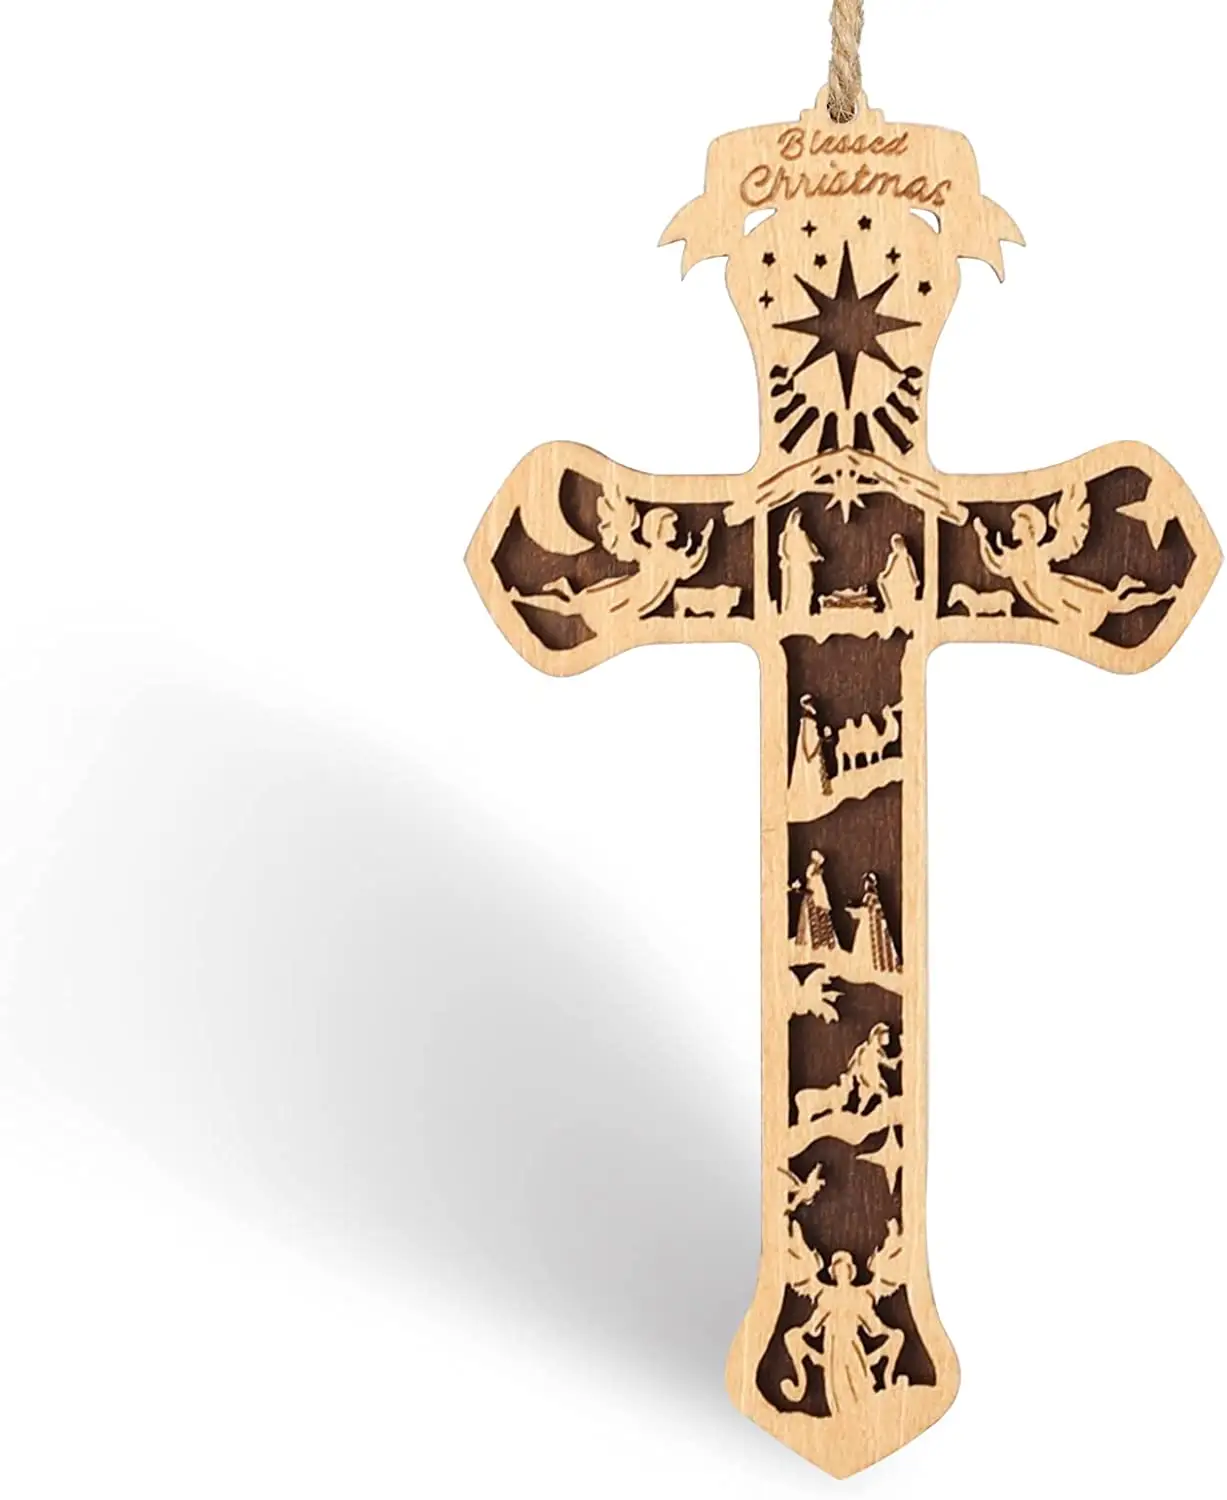 Kraff Xmas Hot Sale Krippe Kreuz Weihnachts geschichte Ornament Religiöse Heilige Familie Geschenk für Familien freunde und Christen